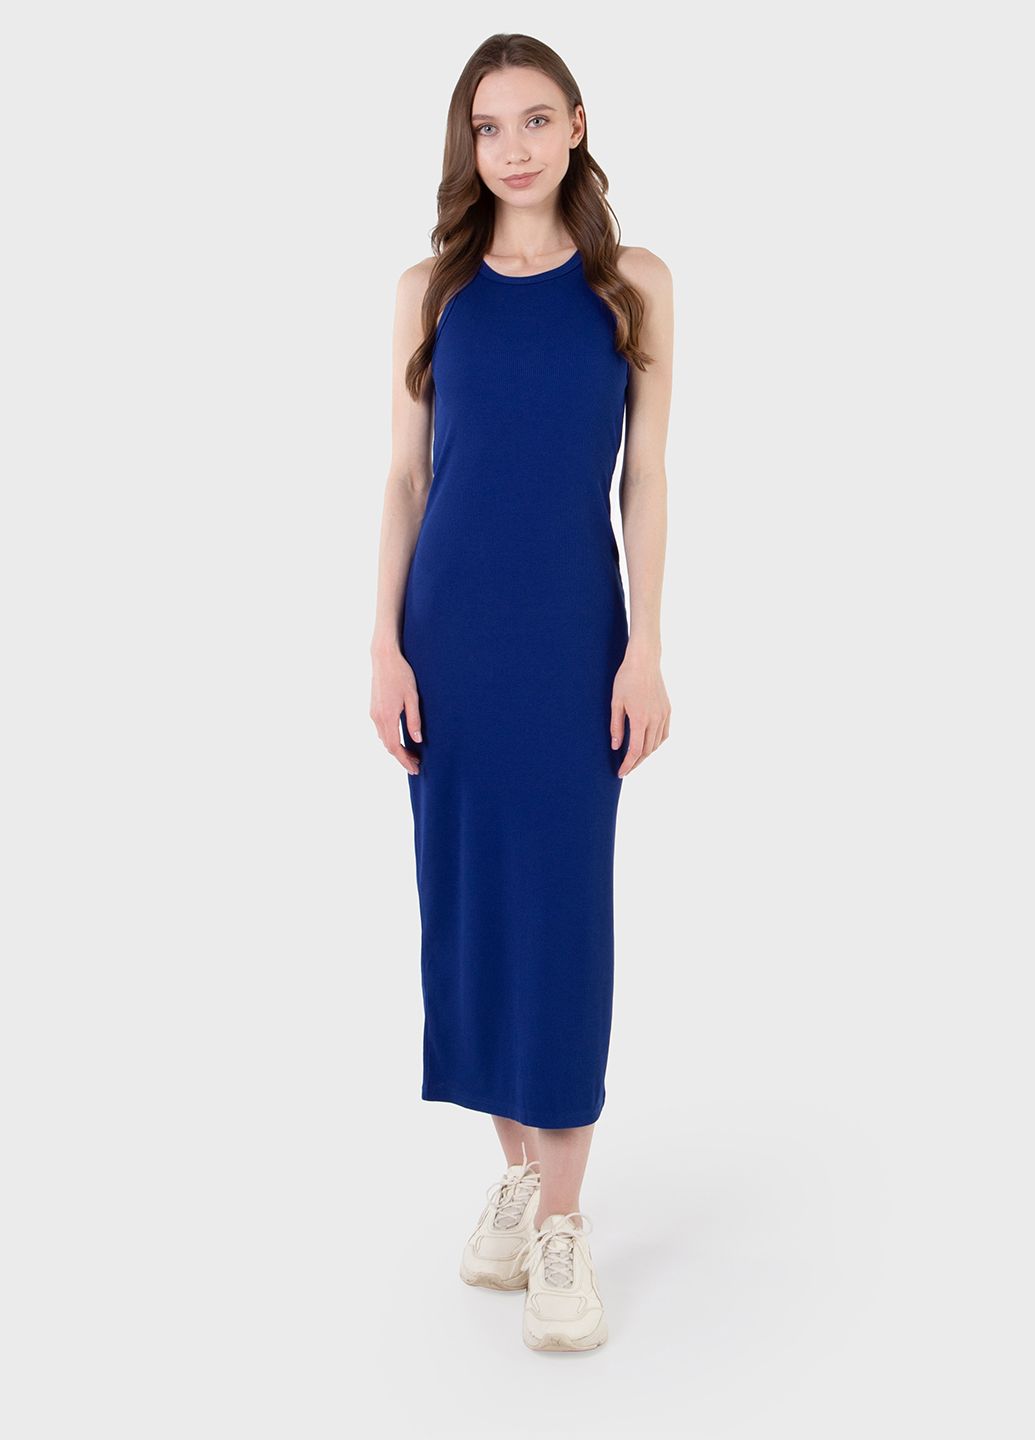 Купить Длинное платье-майка в рубчик синее Merlini Лонга 700000107 размер 42-44 (S-M) в интернет-магазине